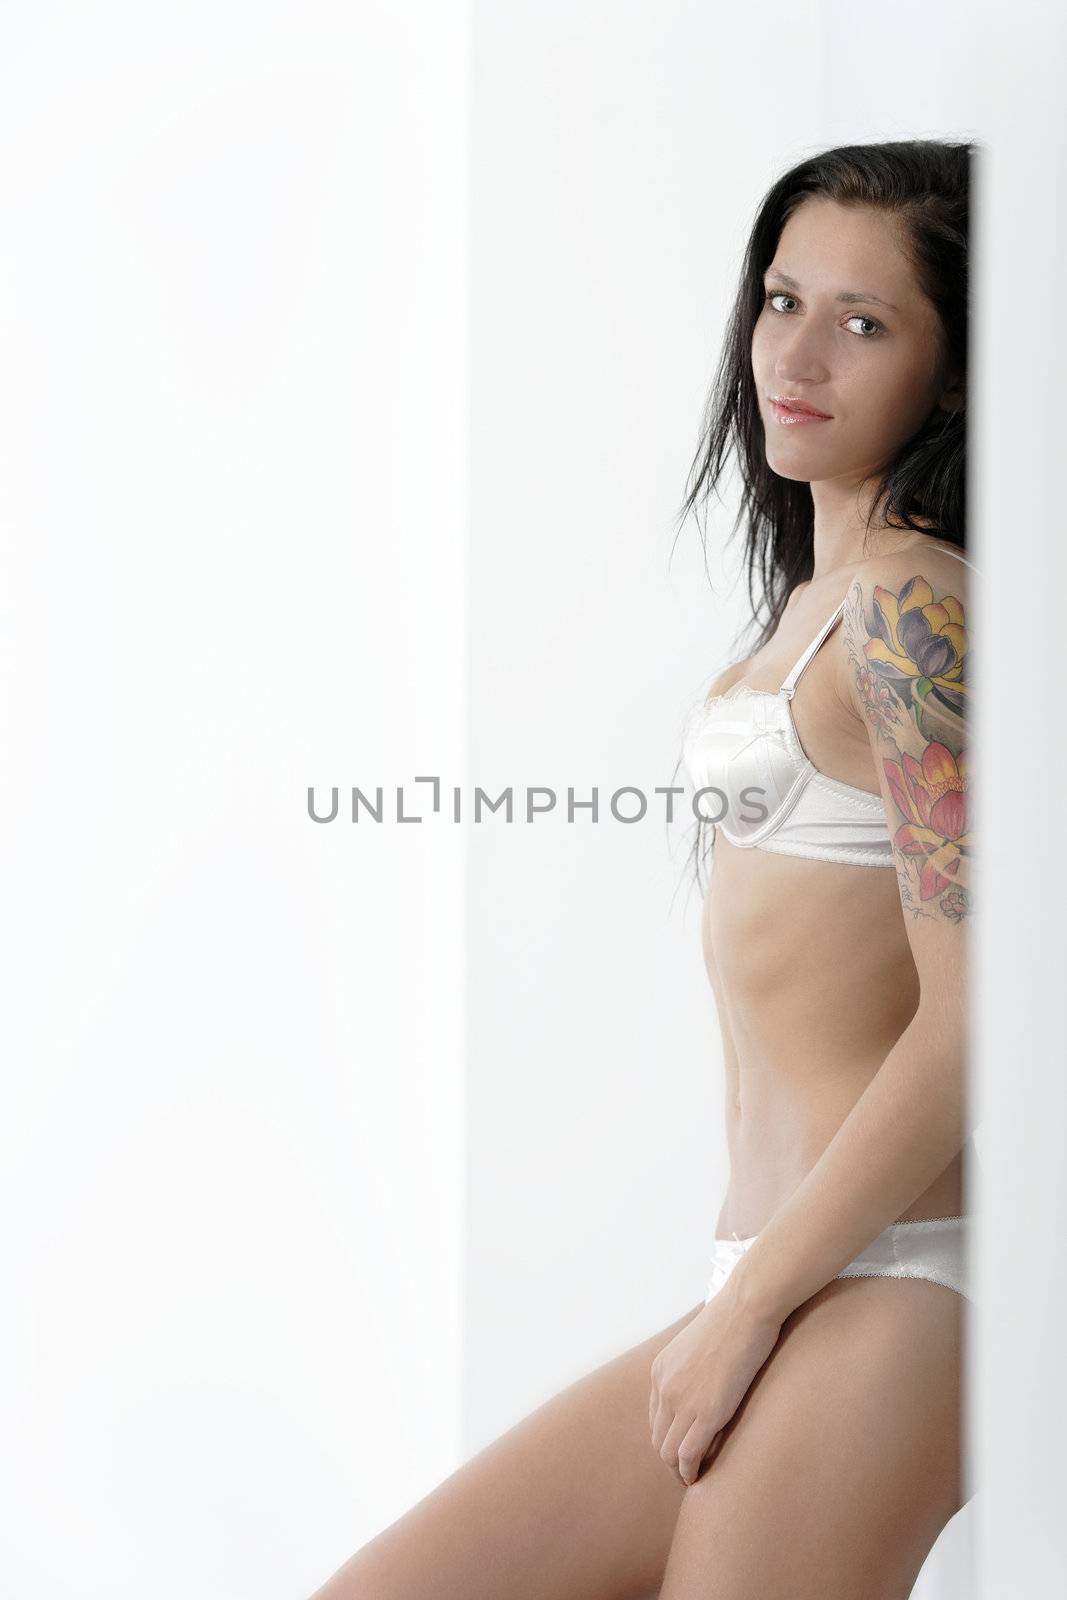 Beautiful woman in underwear by studiofi